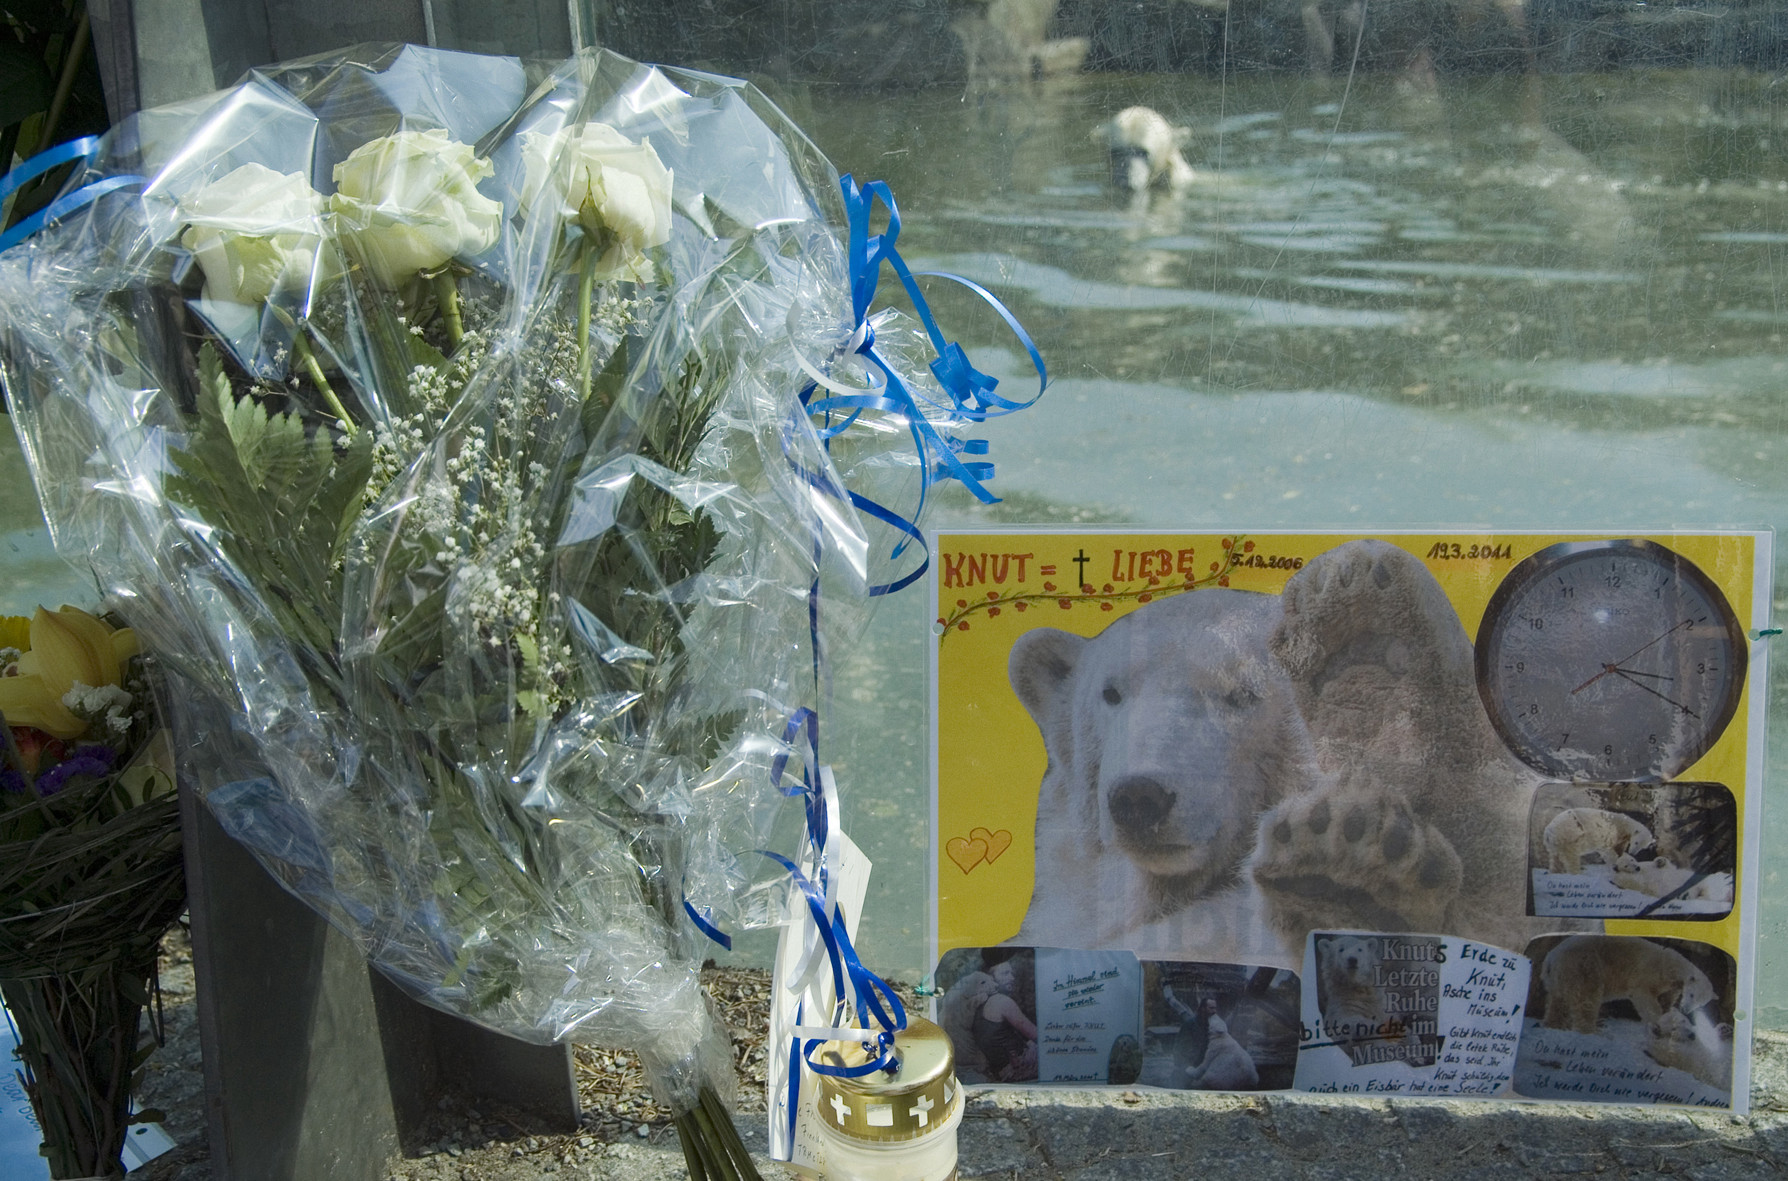 Blumen und Bilder vor der Glasscheibe des Eisbärengeheges. Im Hintergrund schwimmt ein Eisbär.